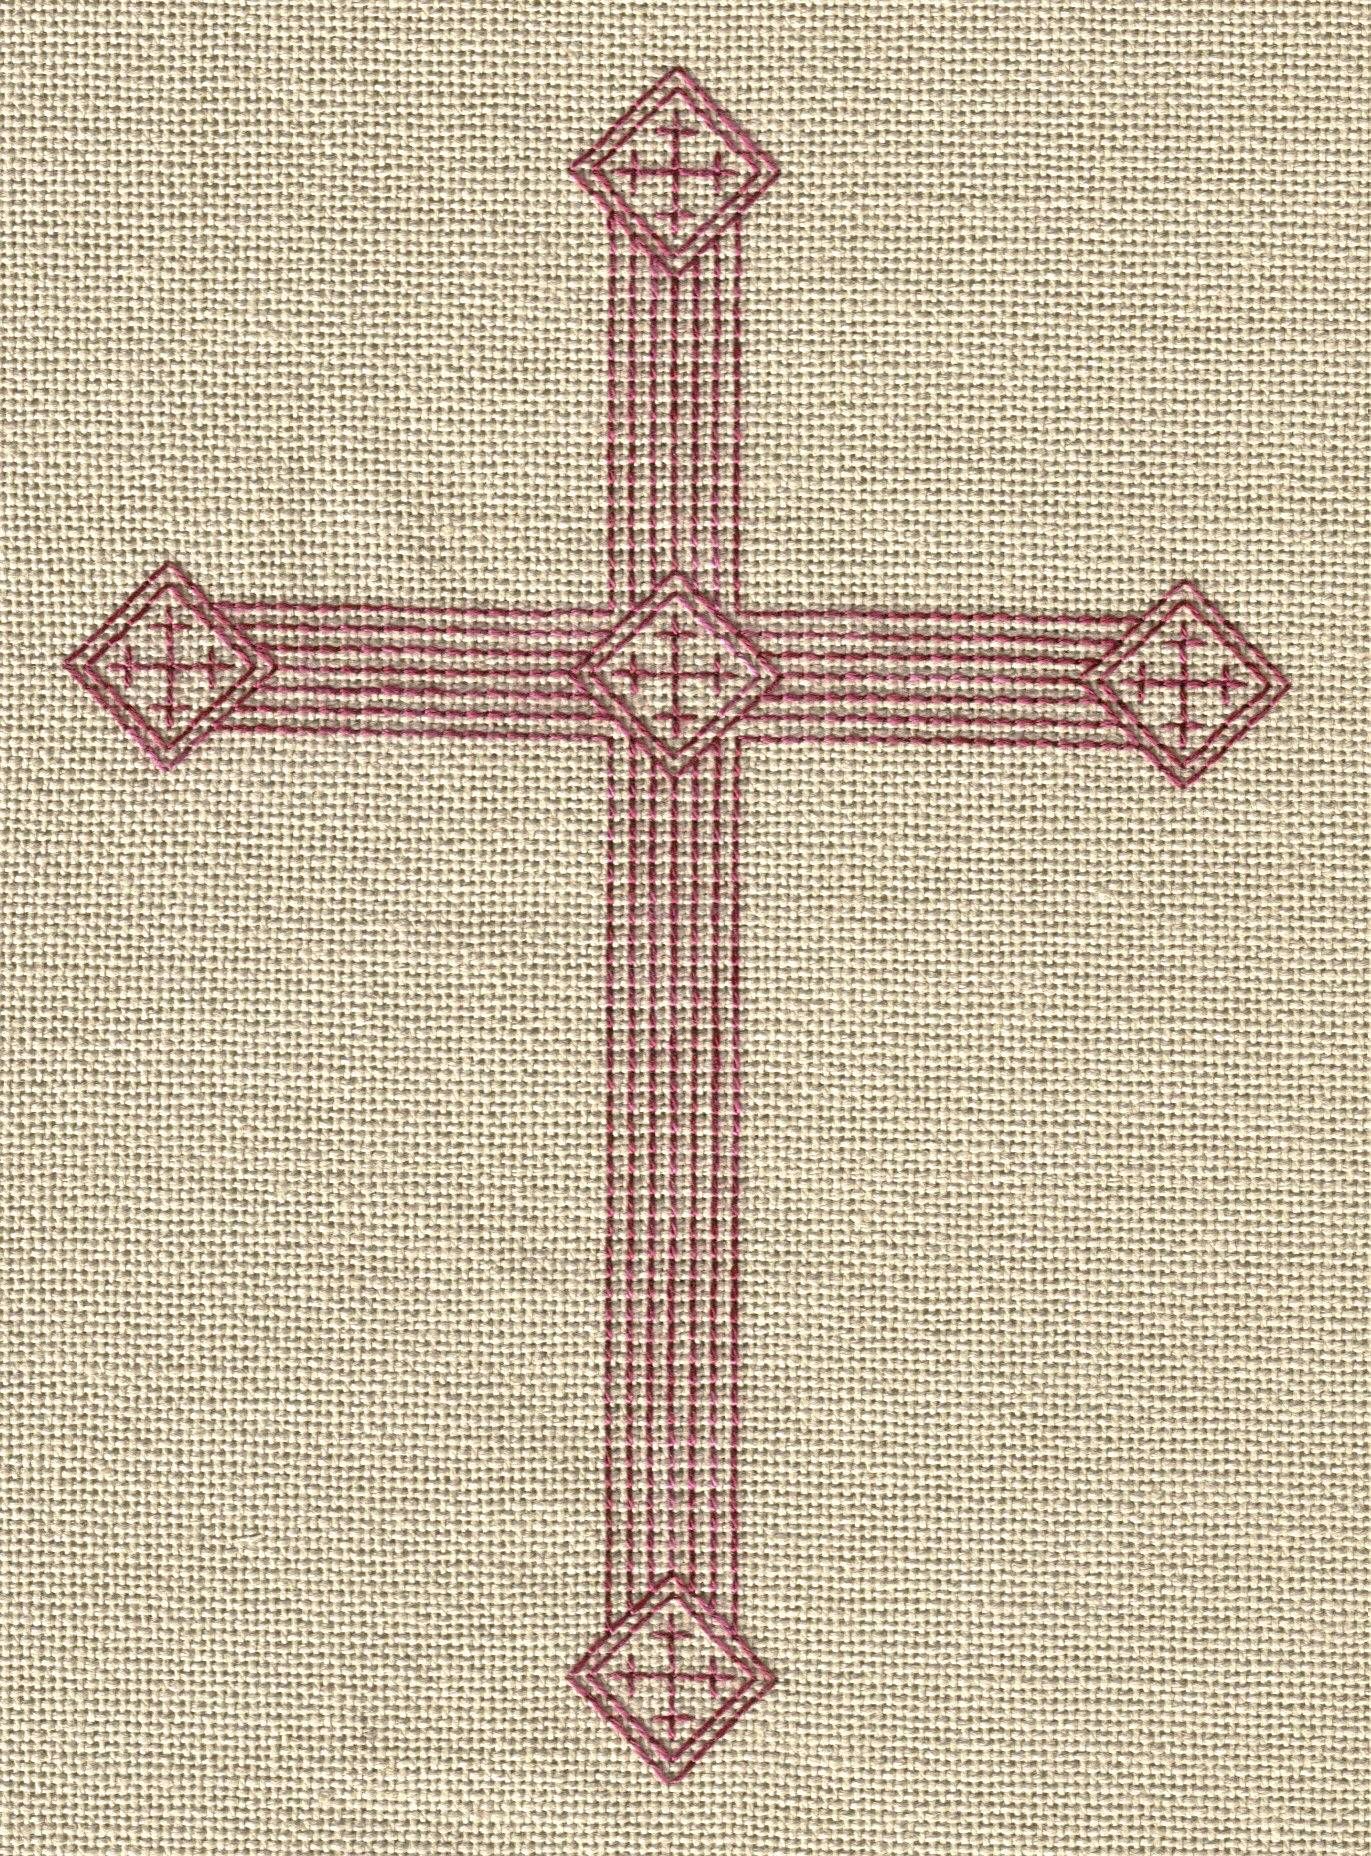 Cross-Stitch | Cross patterns, Stitch and Cross stitch